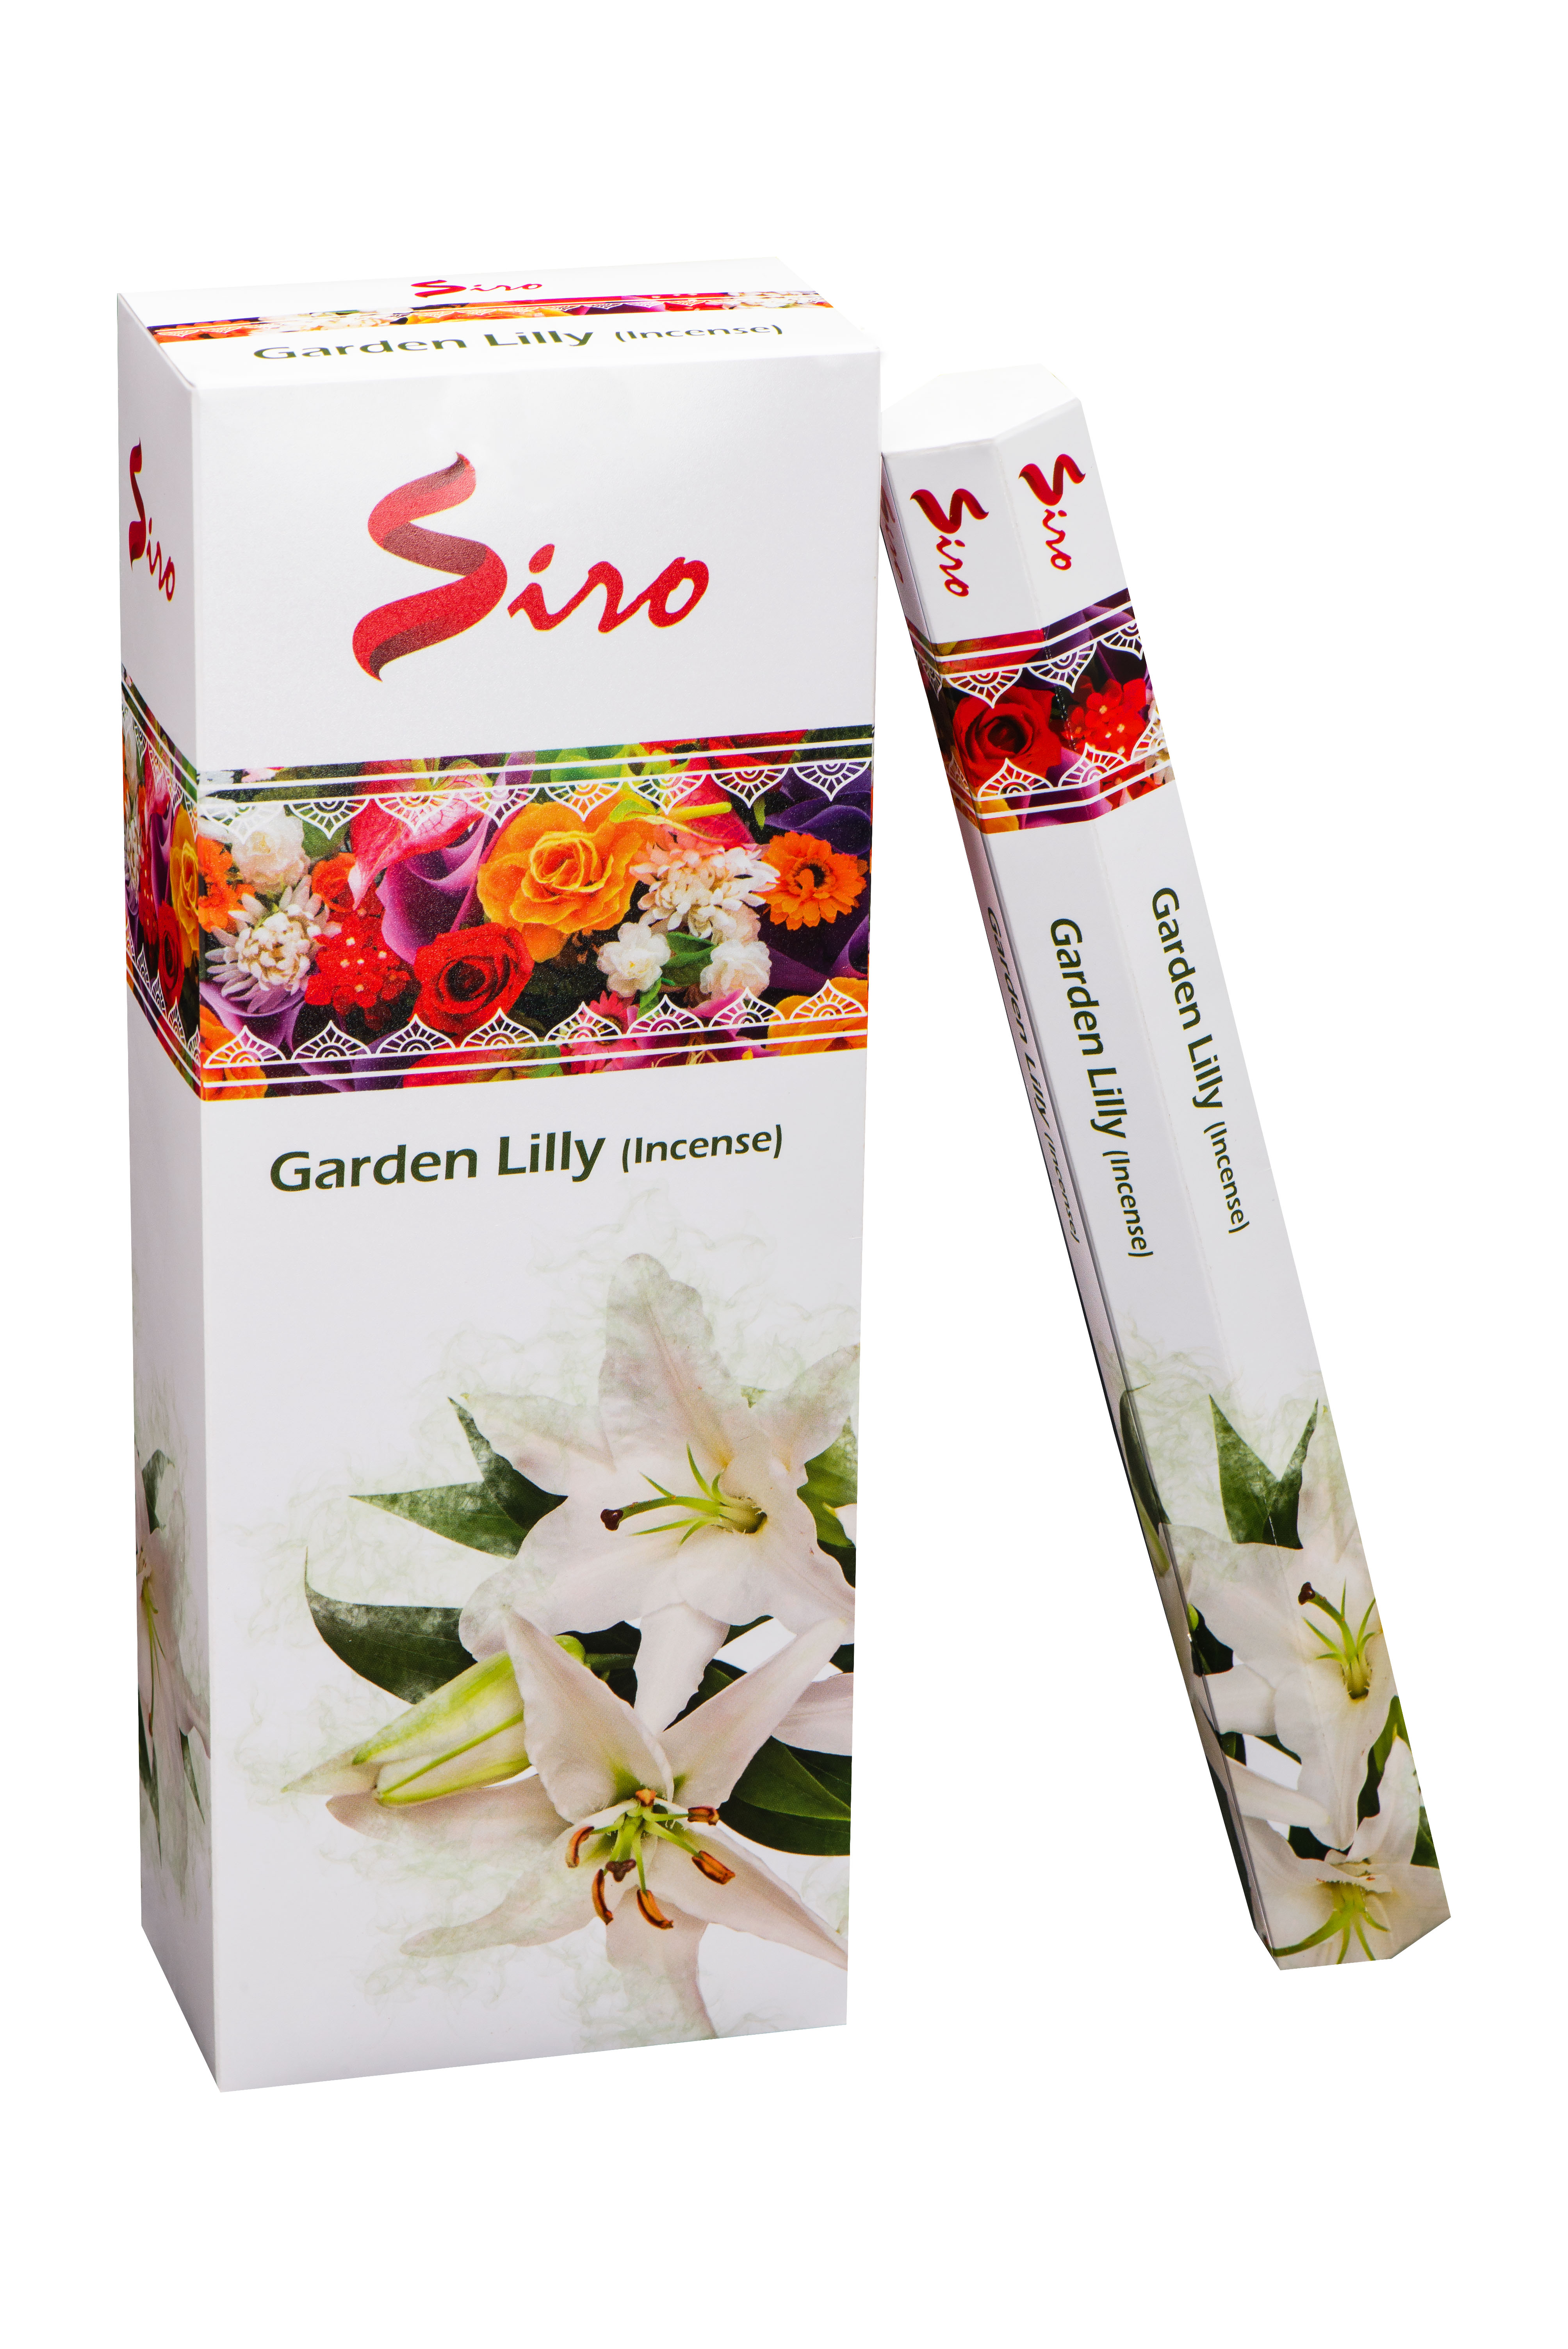 Siro R-ucherst-bchen Garden Lilly (6 Packungen mit 20 St-bchen) unter Weihrauch - Weihrauch Arten - R?ucherst?bchen